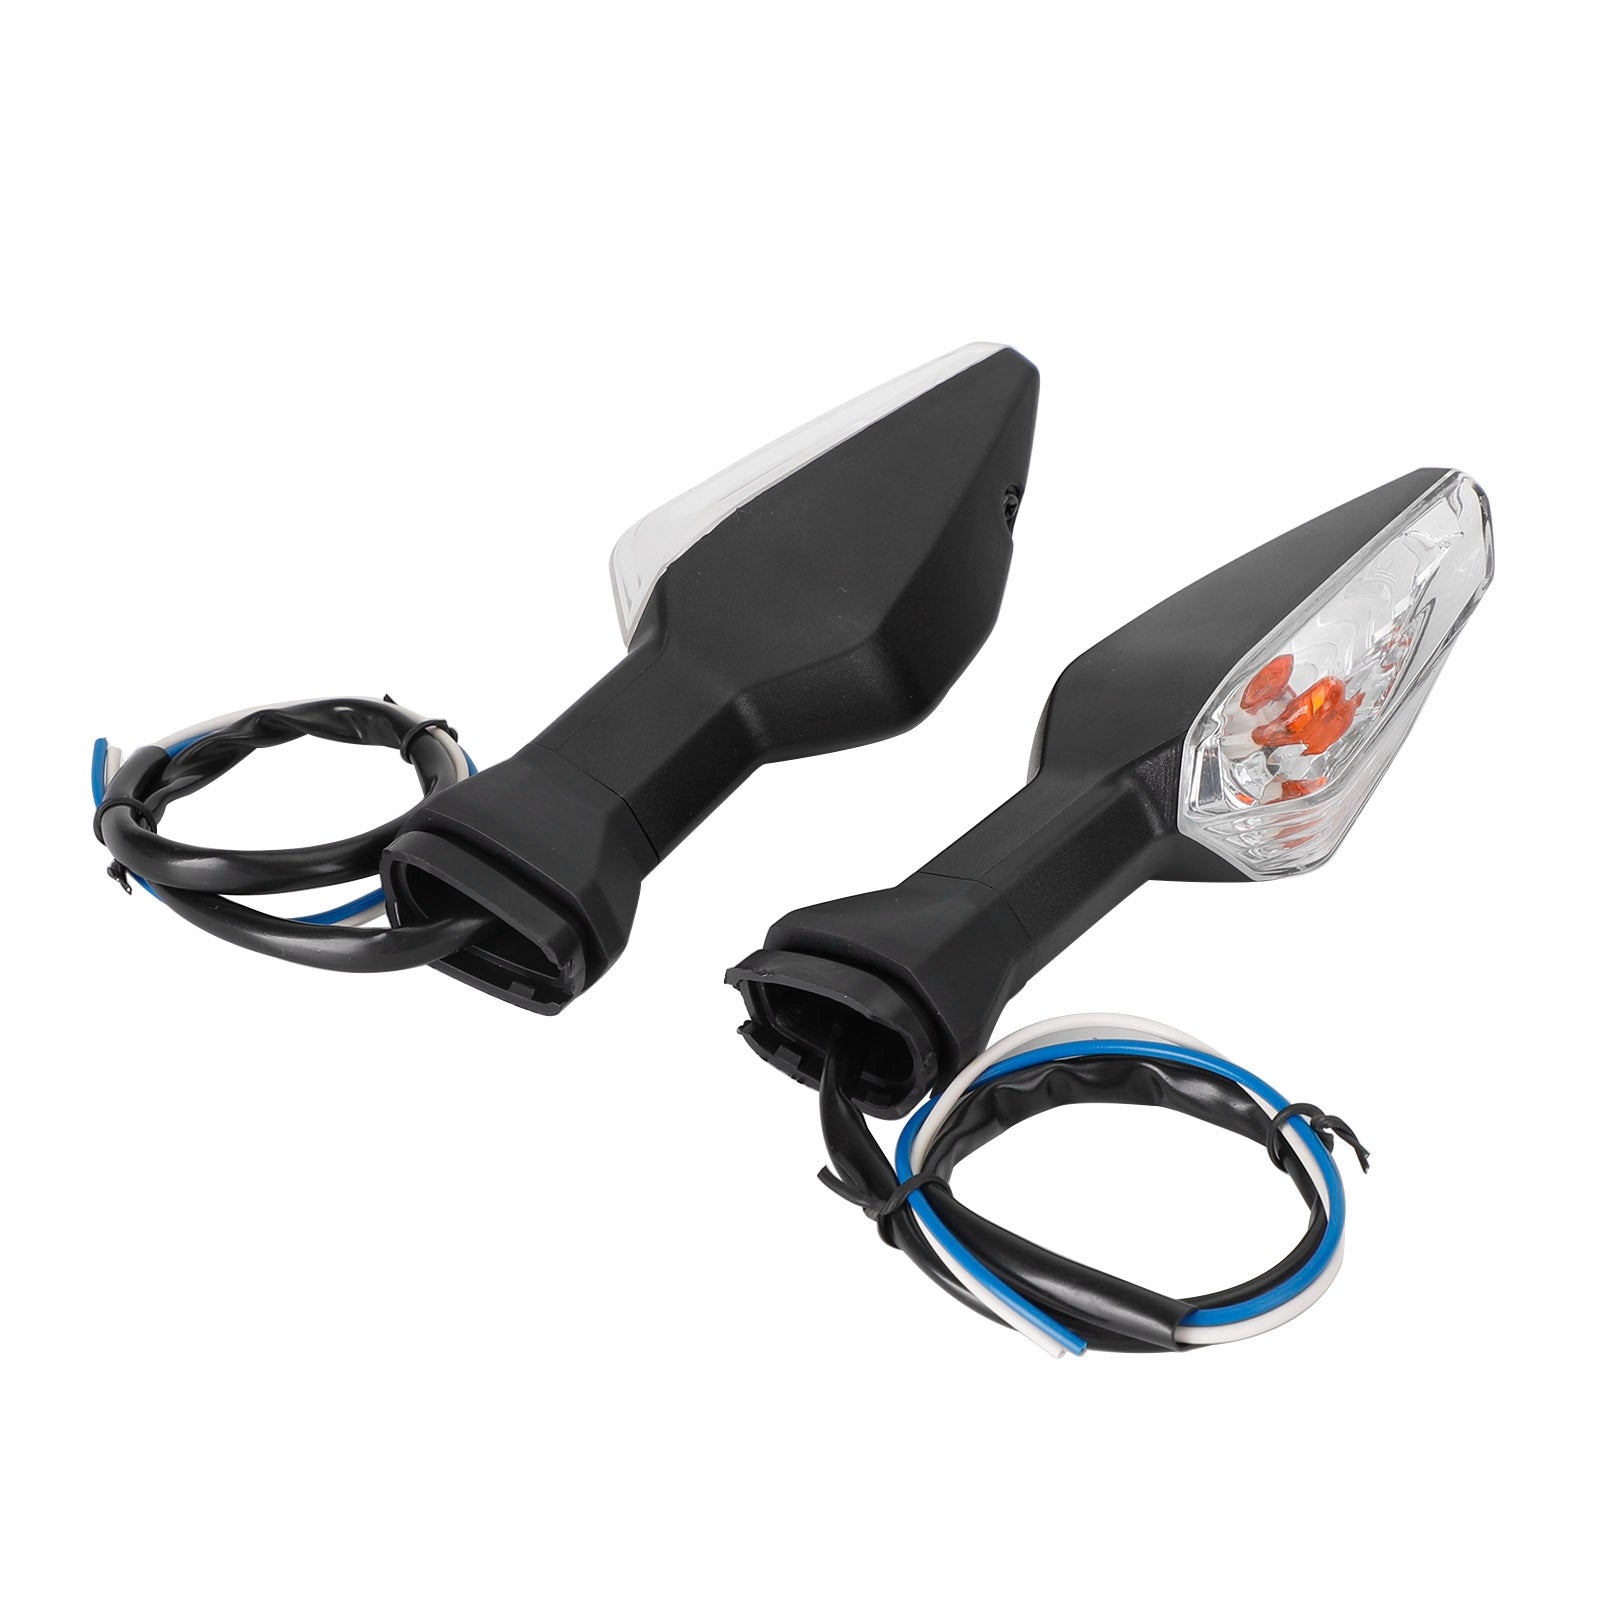 Turn Signal Light Indicator Lamp For Kawasaki Ninja Z400 Z650 Z900 Z1000 Z1000SX